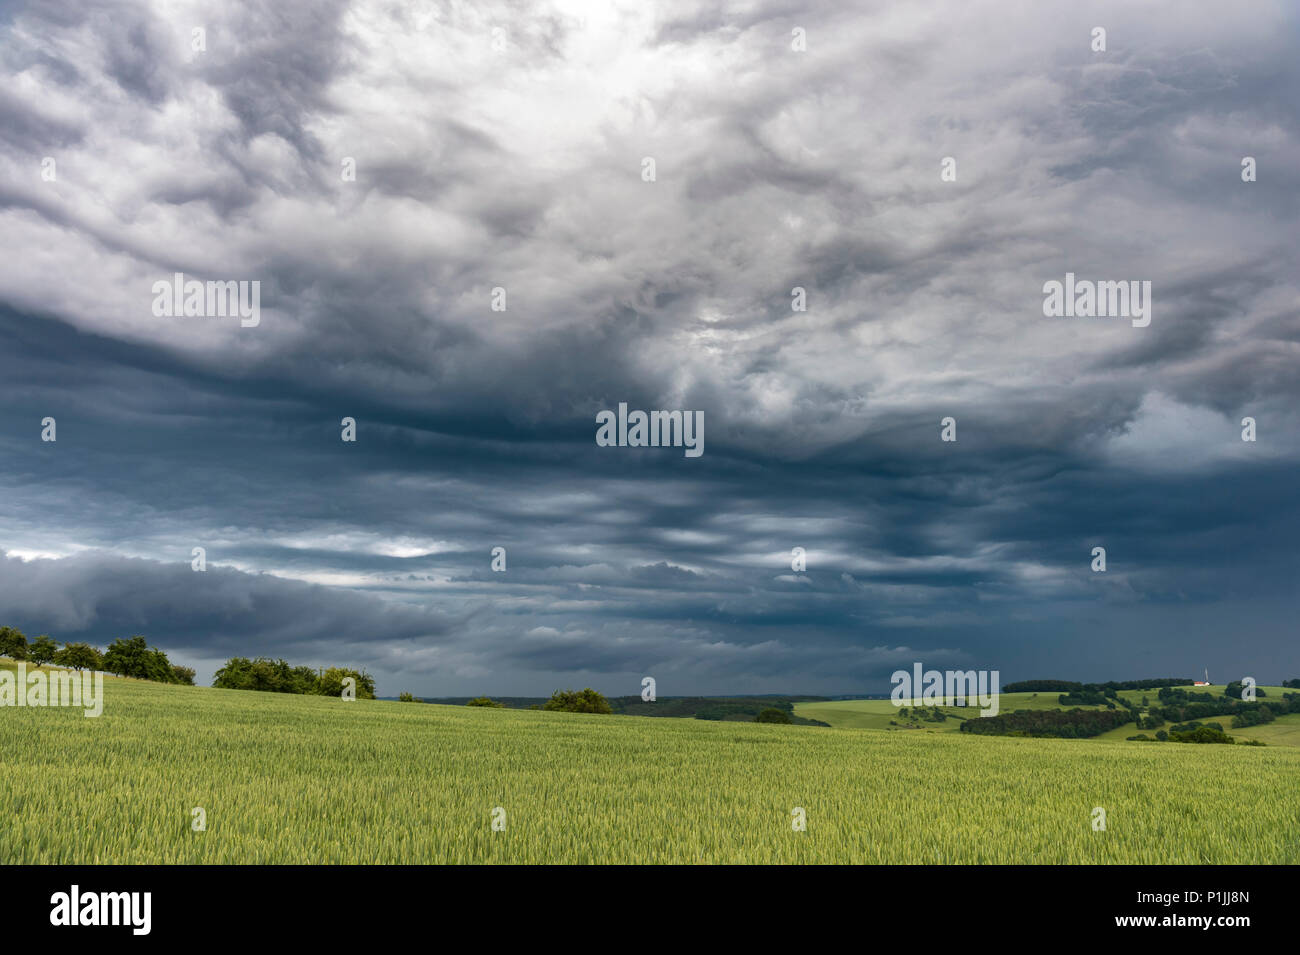 Dynamische Himmel mit undulatus asperitas Wolken hinter ein Gewitter in der Nähe von Jena, Thüringen, Deutschland Stockfoto